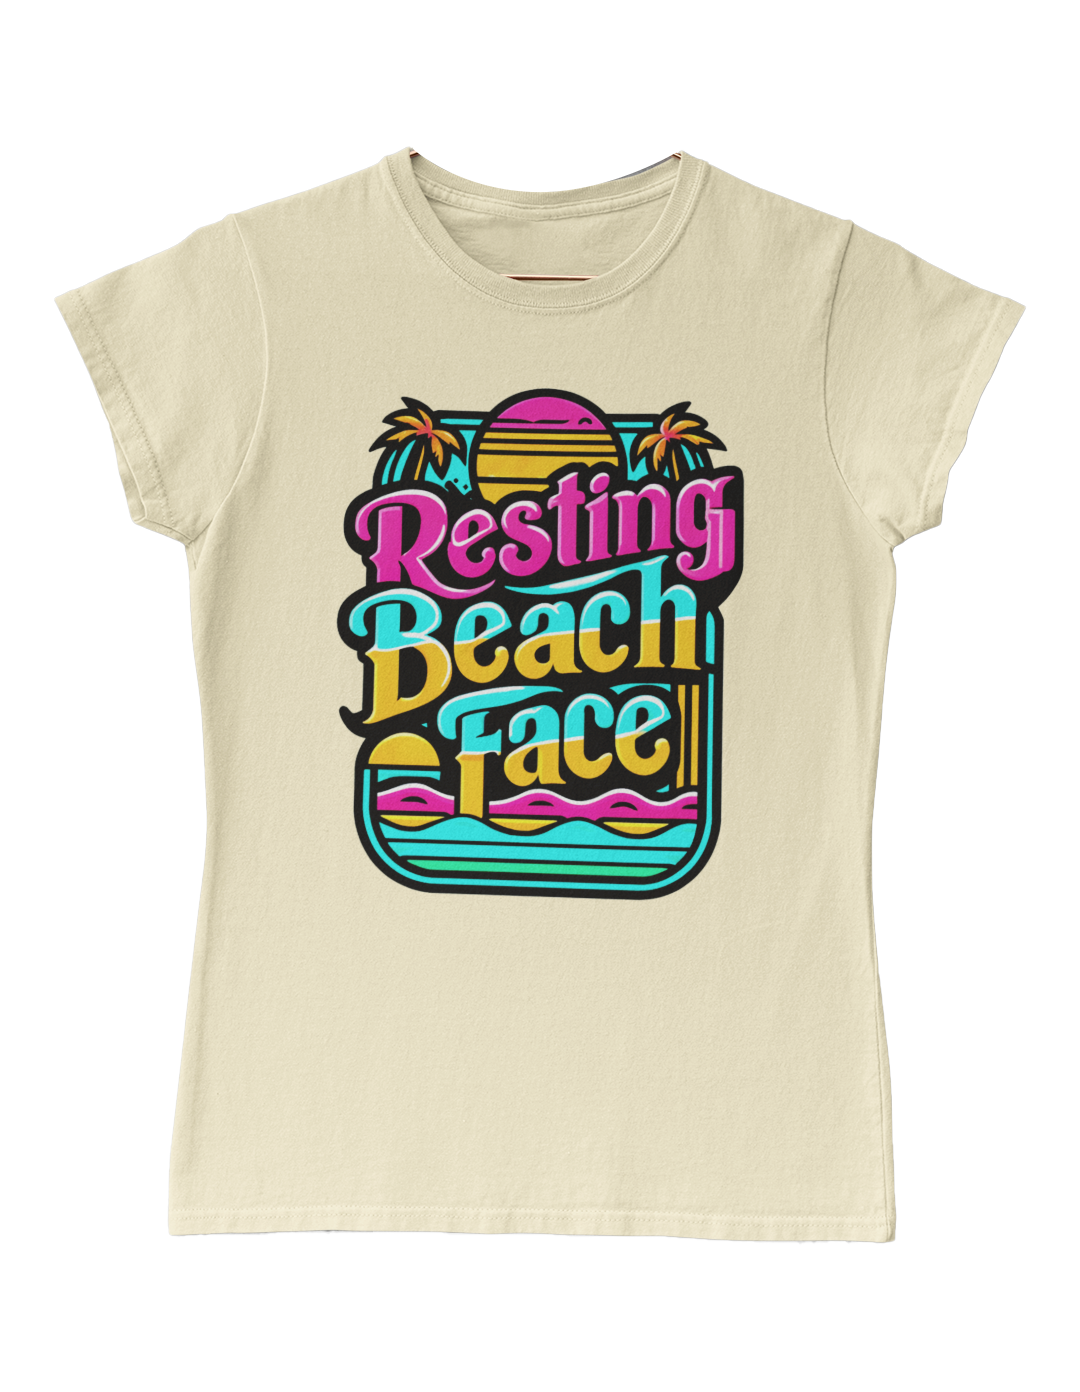 Resting Beach Face - Summertime womens T shirt